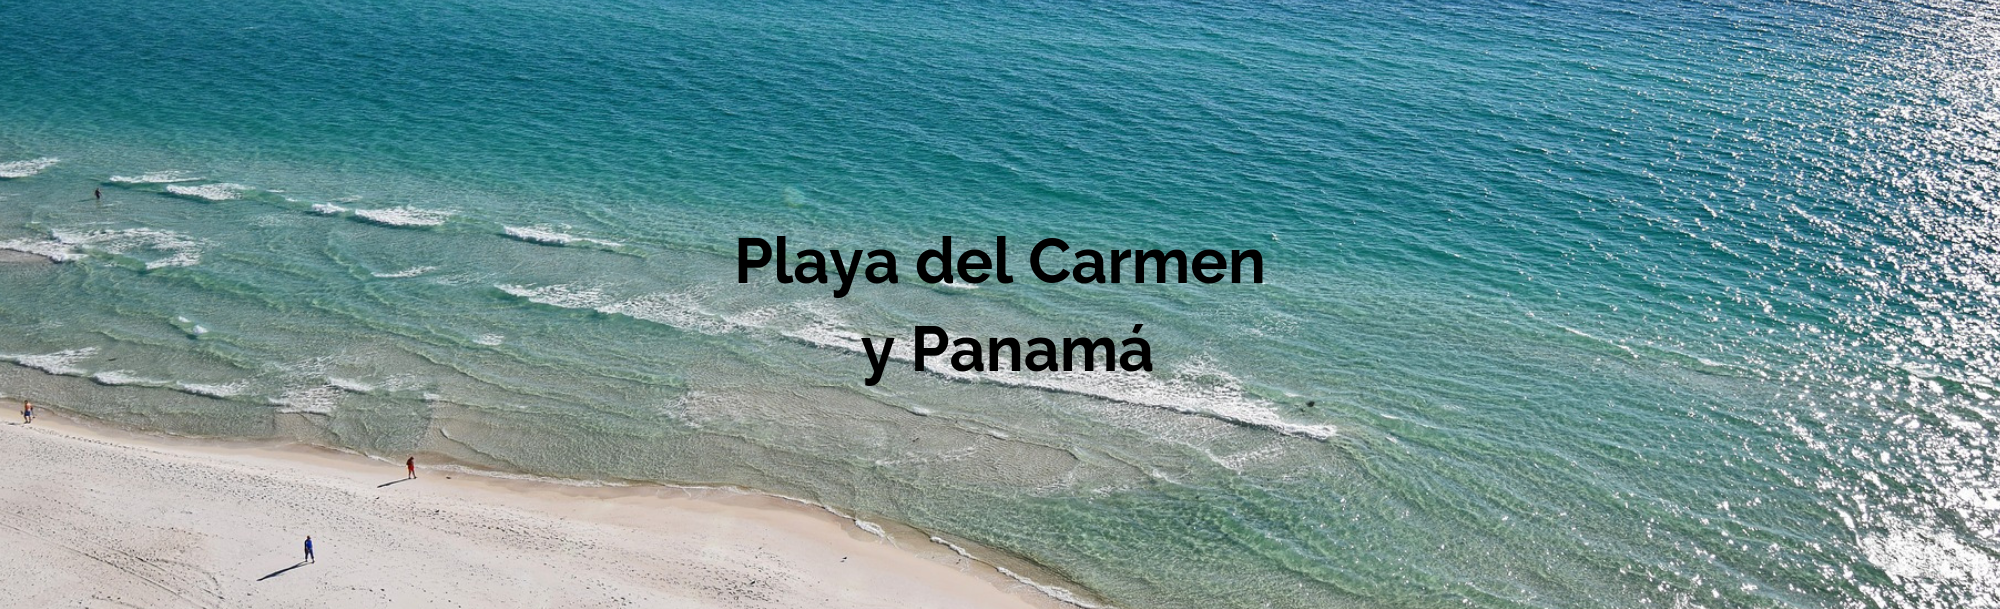 Playa del Carmen y Panamá